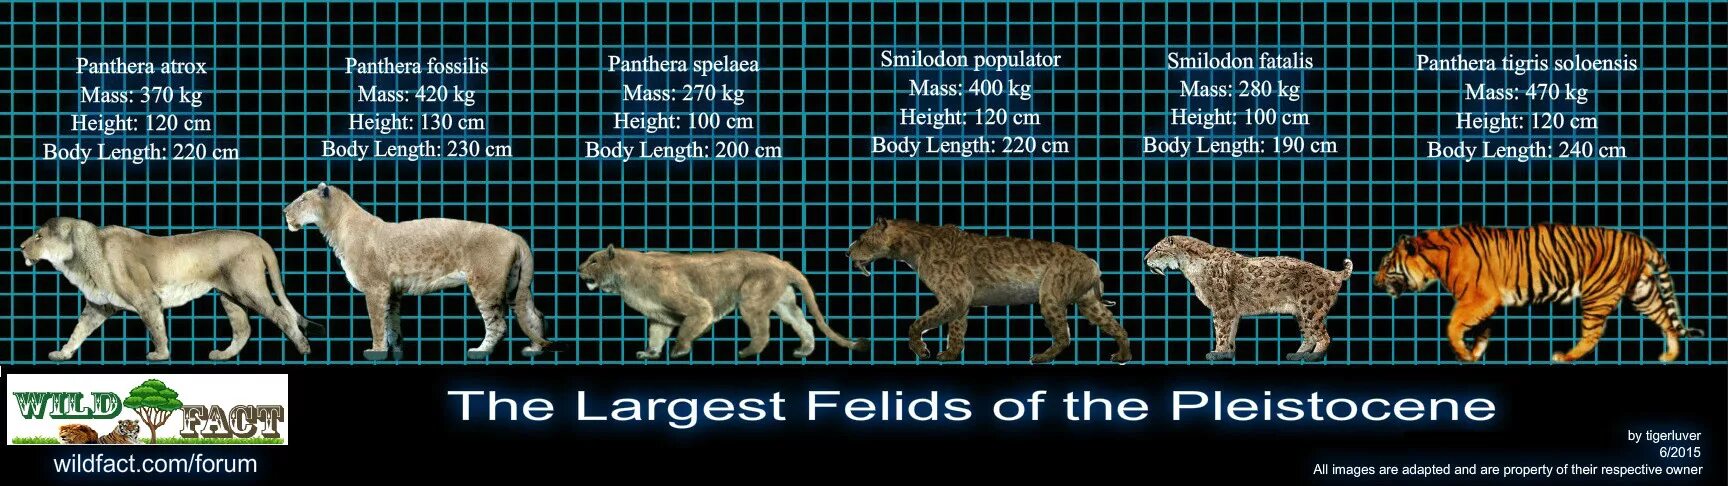 Смилодон-разрушитель размер. Смилодон популятор. Размер Смилодона. Эволюция тигра.